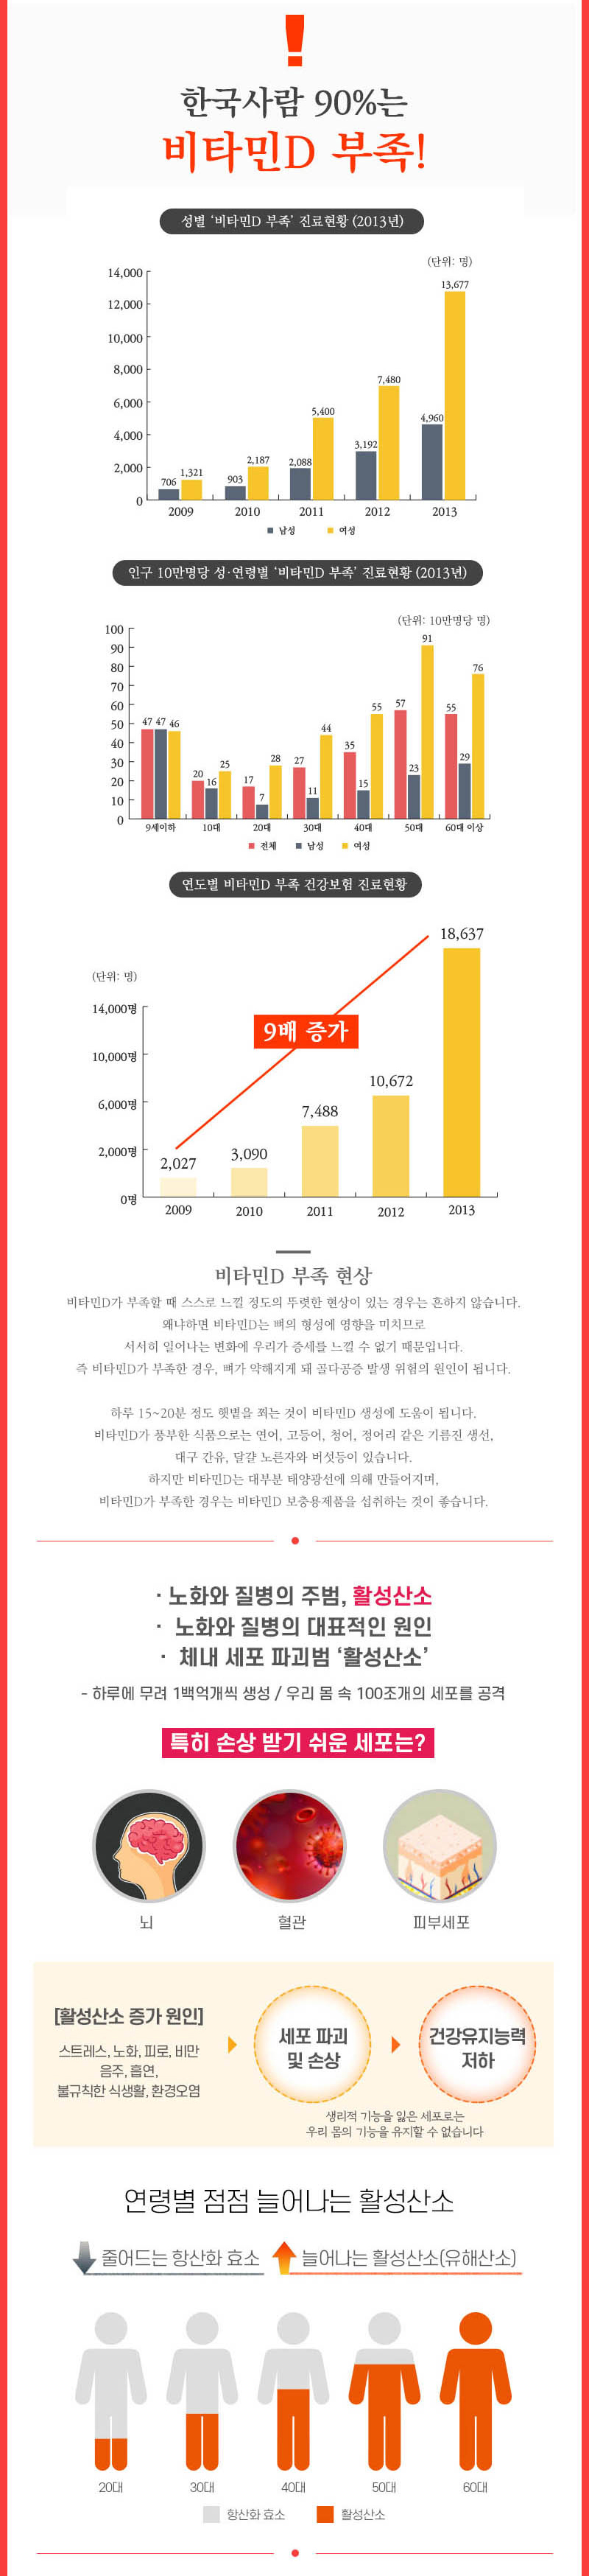 로트벡쉔 이뮨샷 올인원 비타민 플러스 1BOX(10병) - 고함량 멀티 비타민 앰플